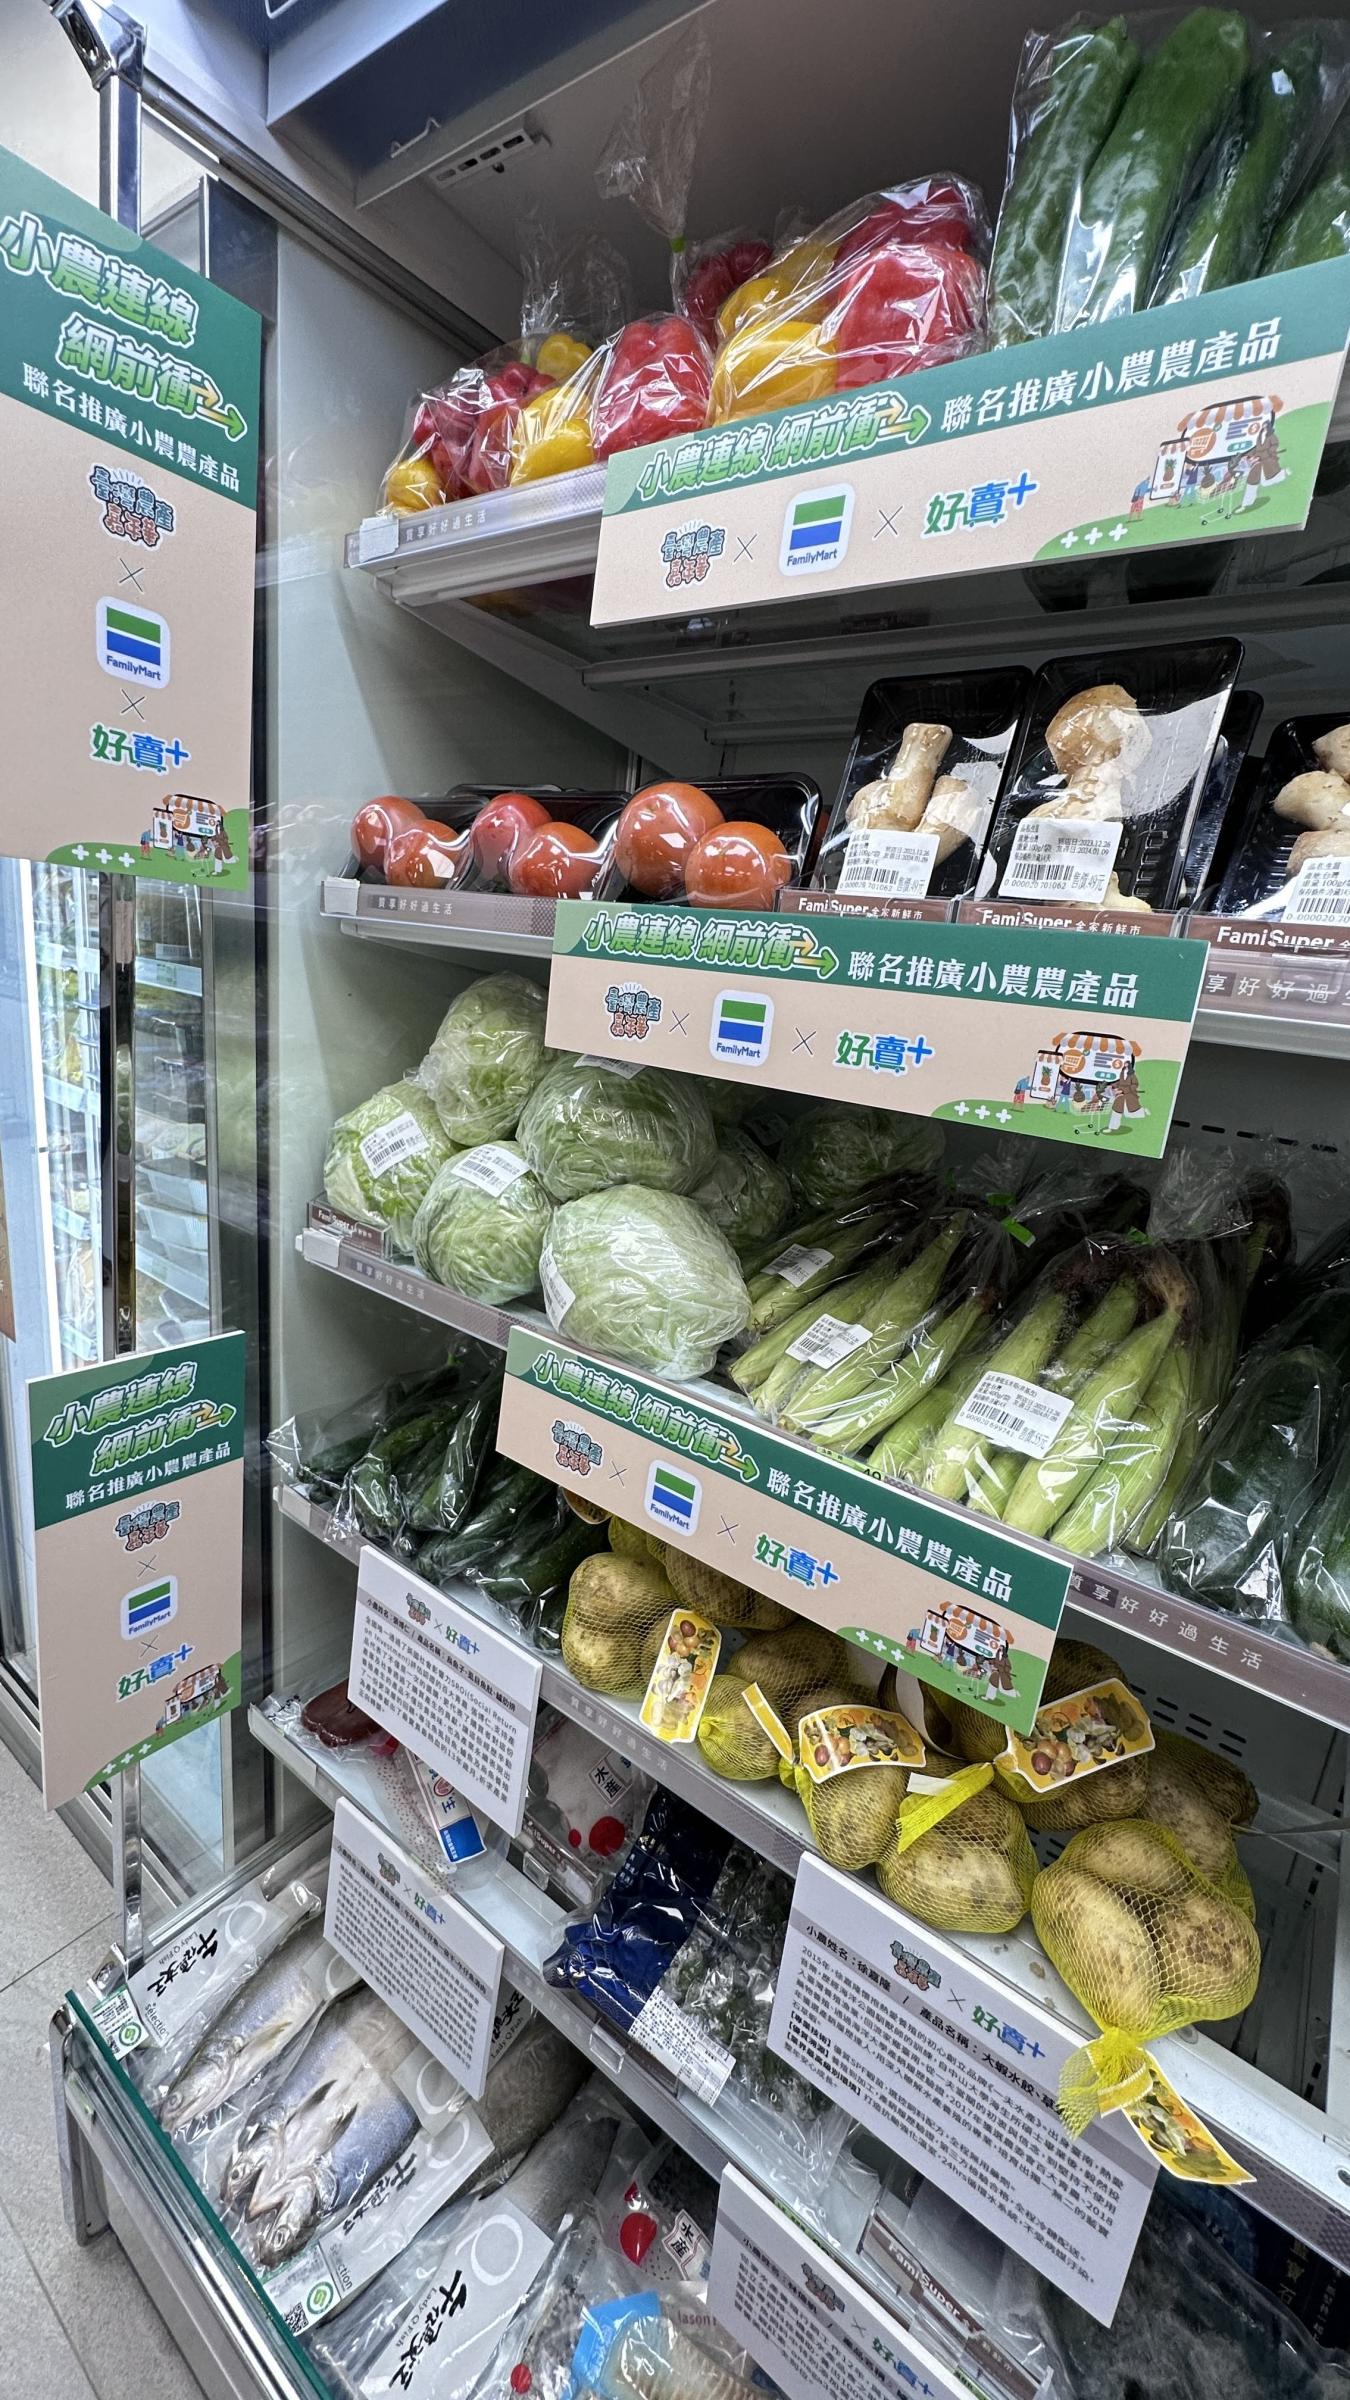 臺灣農產嘉年華與全家便利商店聯名販售農產品上架情形(2)